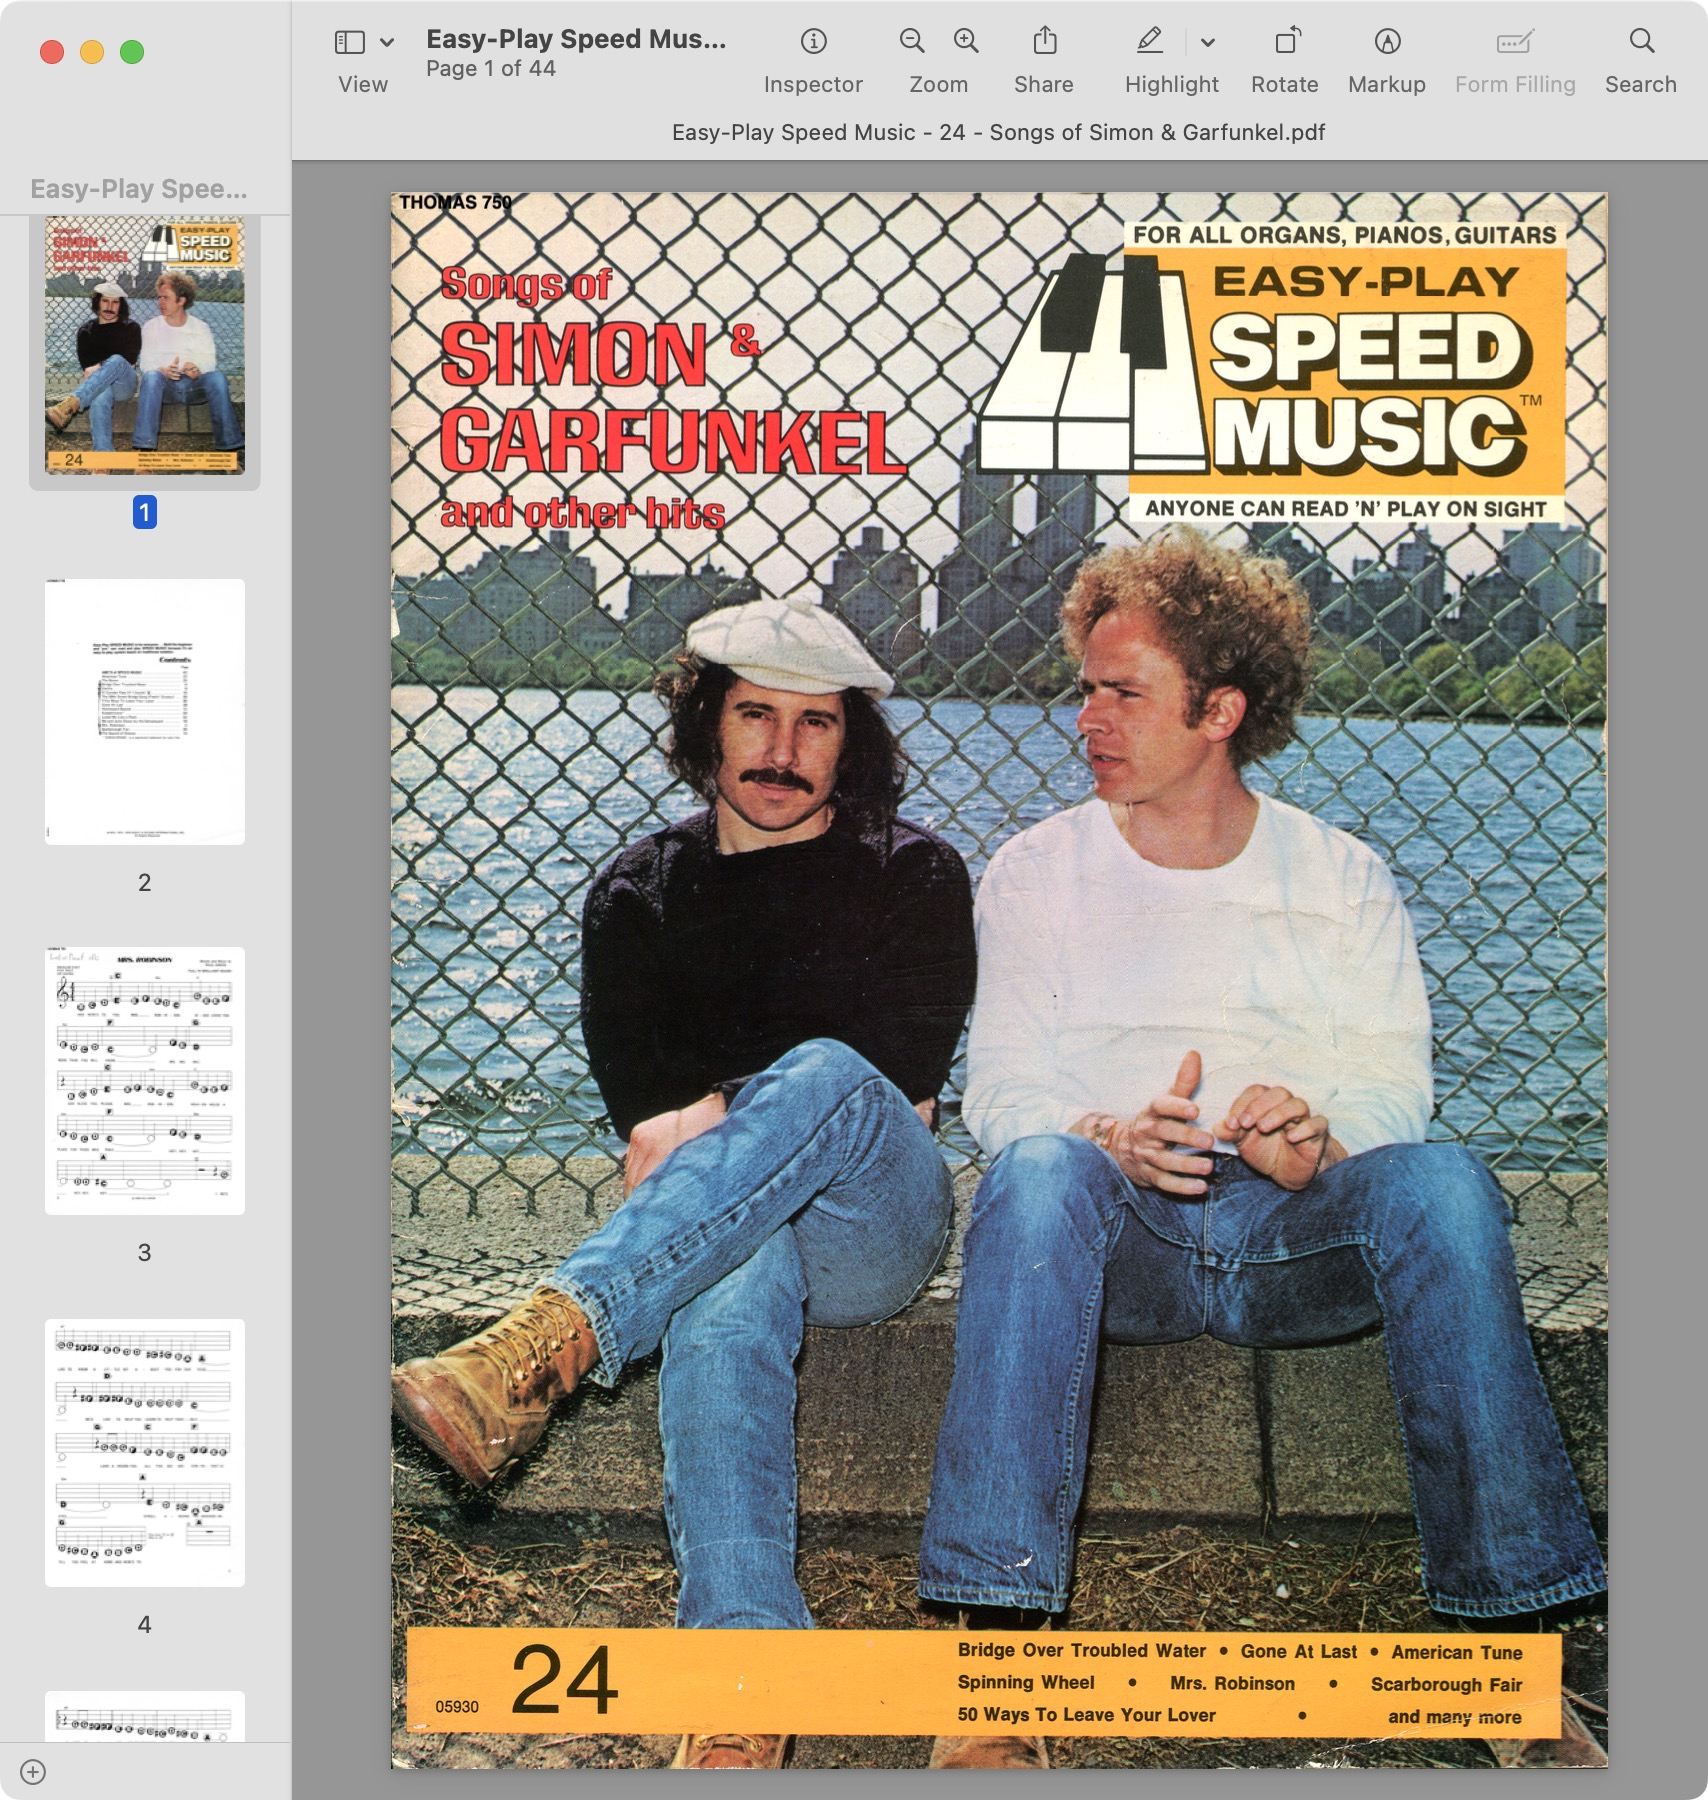 Easy-Play Speed Music - Songs of Simon & Garfunkel - 24.jpg